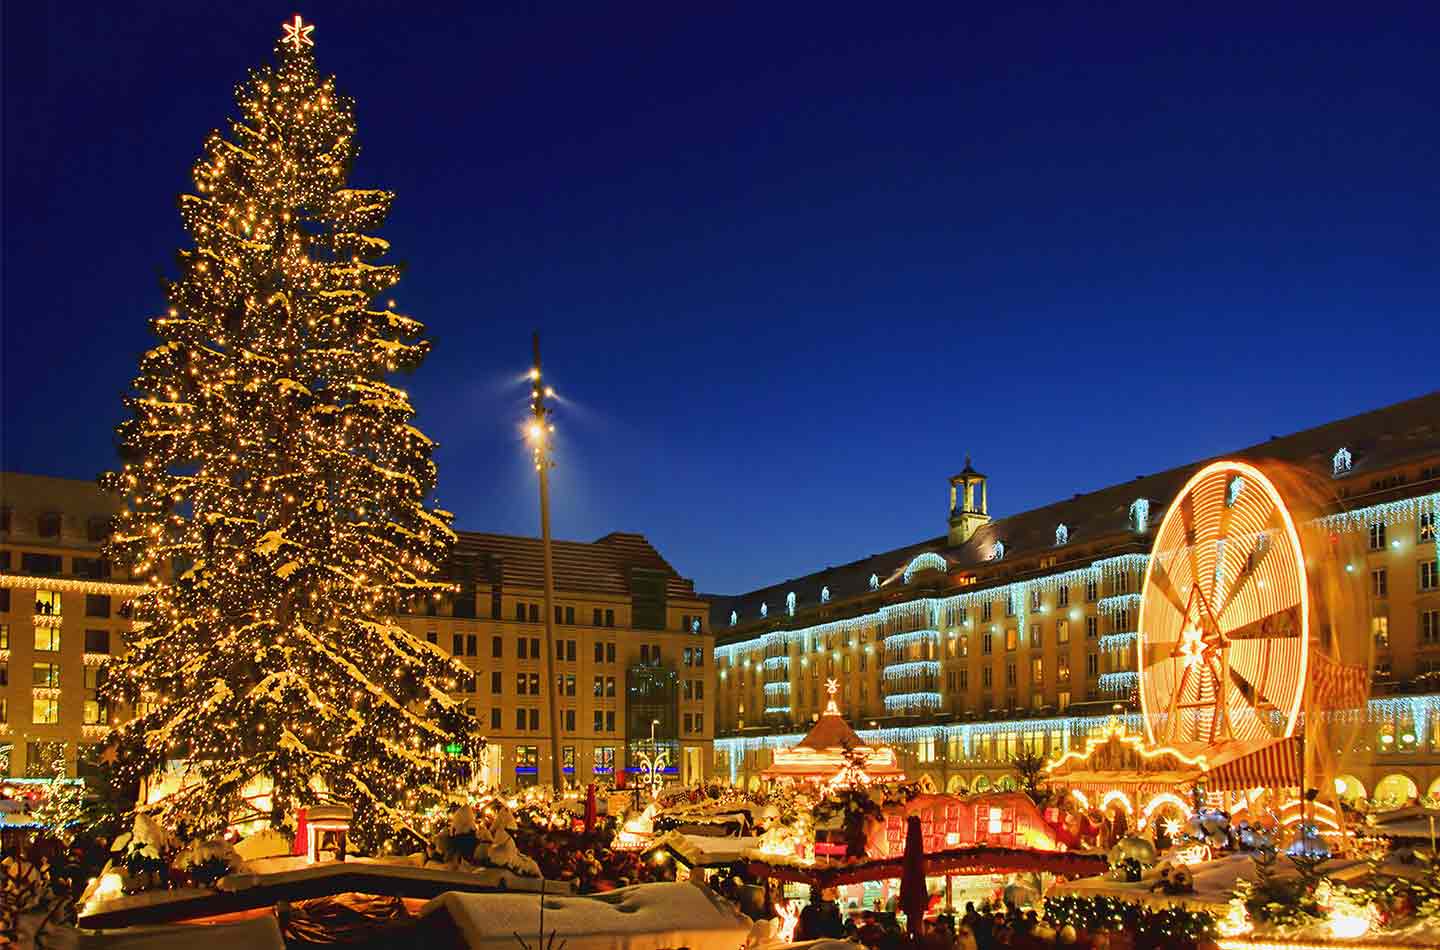 Weihnachtsmarkt Striezelmarkt in Dresden beleuchtet